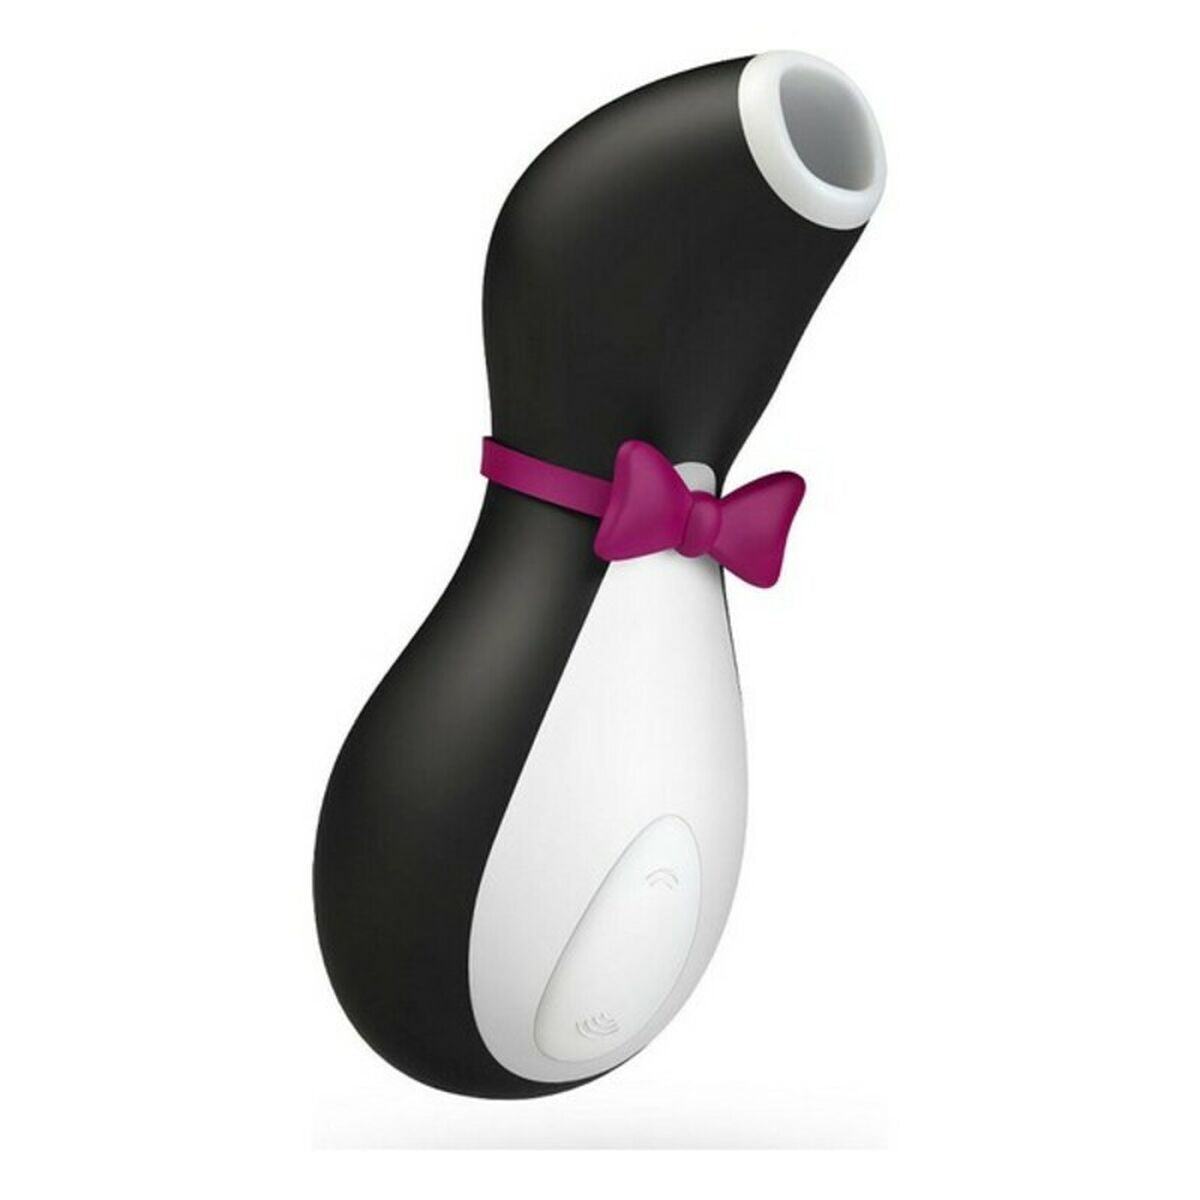 Kaufe Klitoris-Sauger Satisfyer Pro Penguin bei AWK Flagship um € 52.70